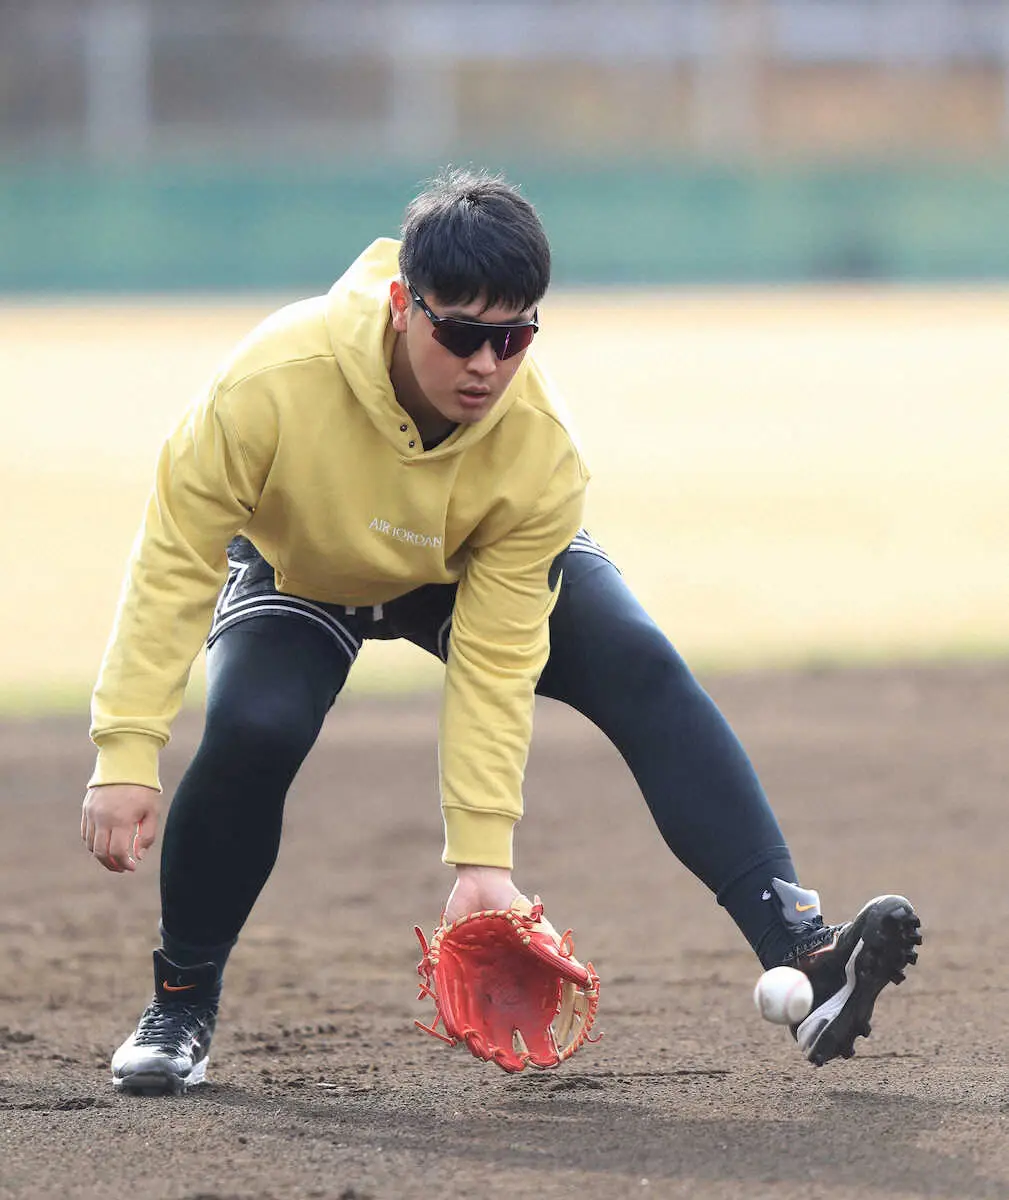 巨人・岡本和真の三塁以外の守備起用にまつわる原辰徳氏の思いやり「メジャーにいく可能性がある」